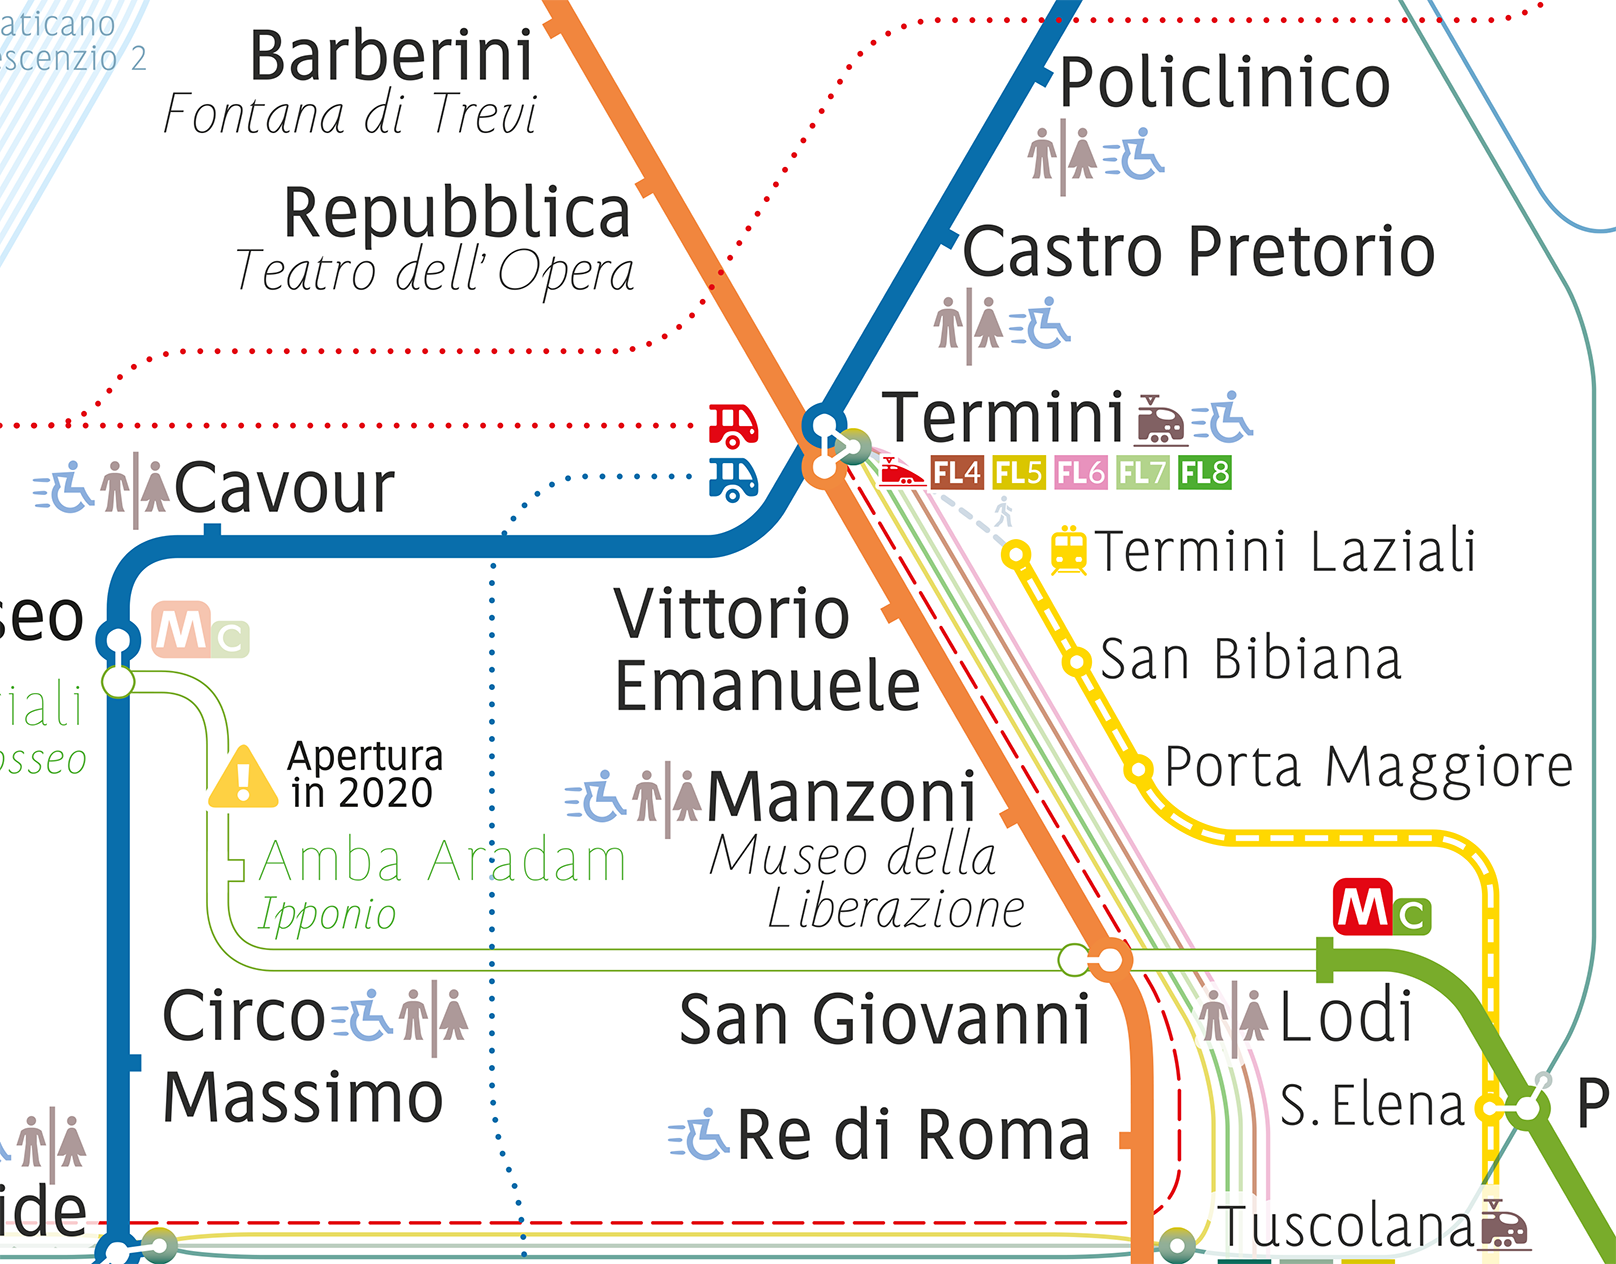 Mappa di metro di Roma rendition image